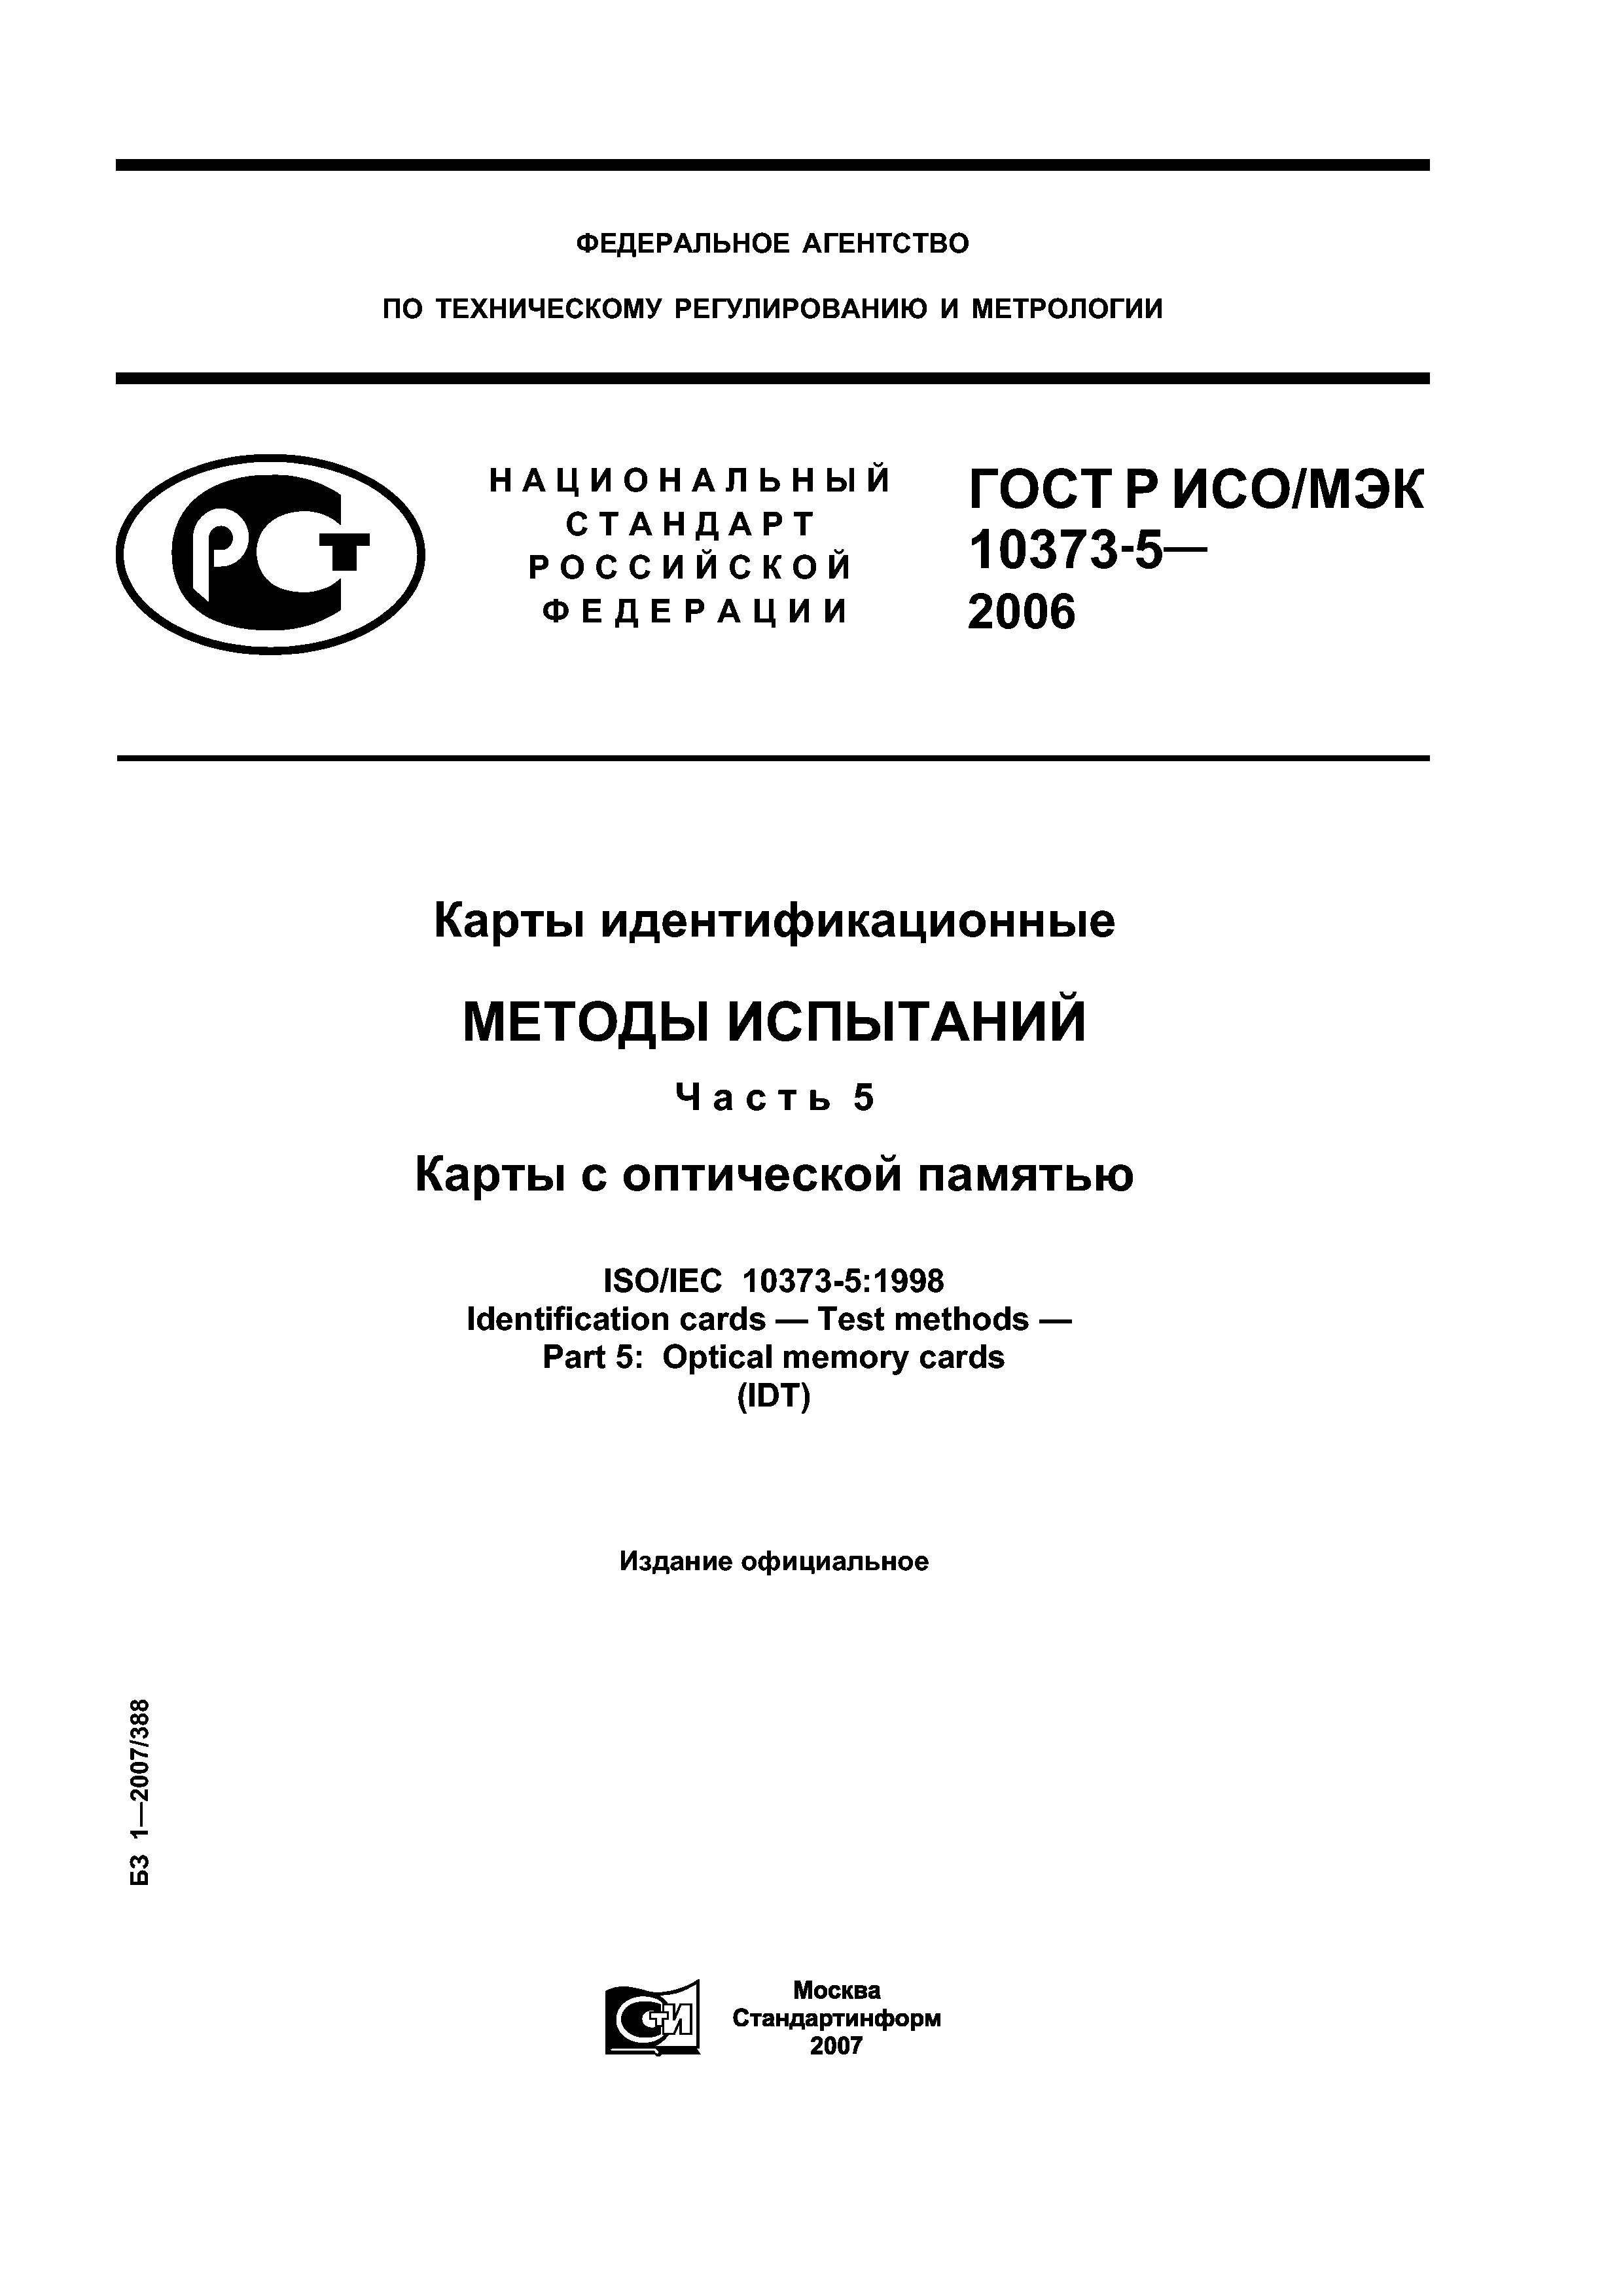 ГОСТ Р ИСО/МЭК 10373-5-2006